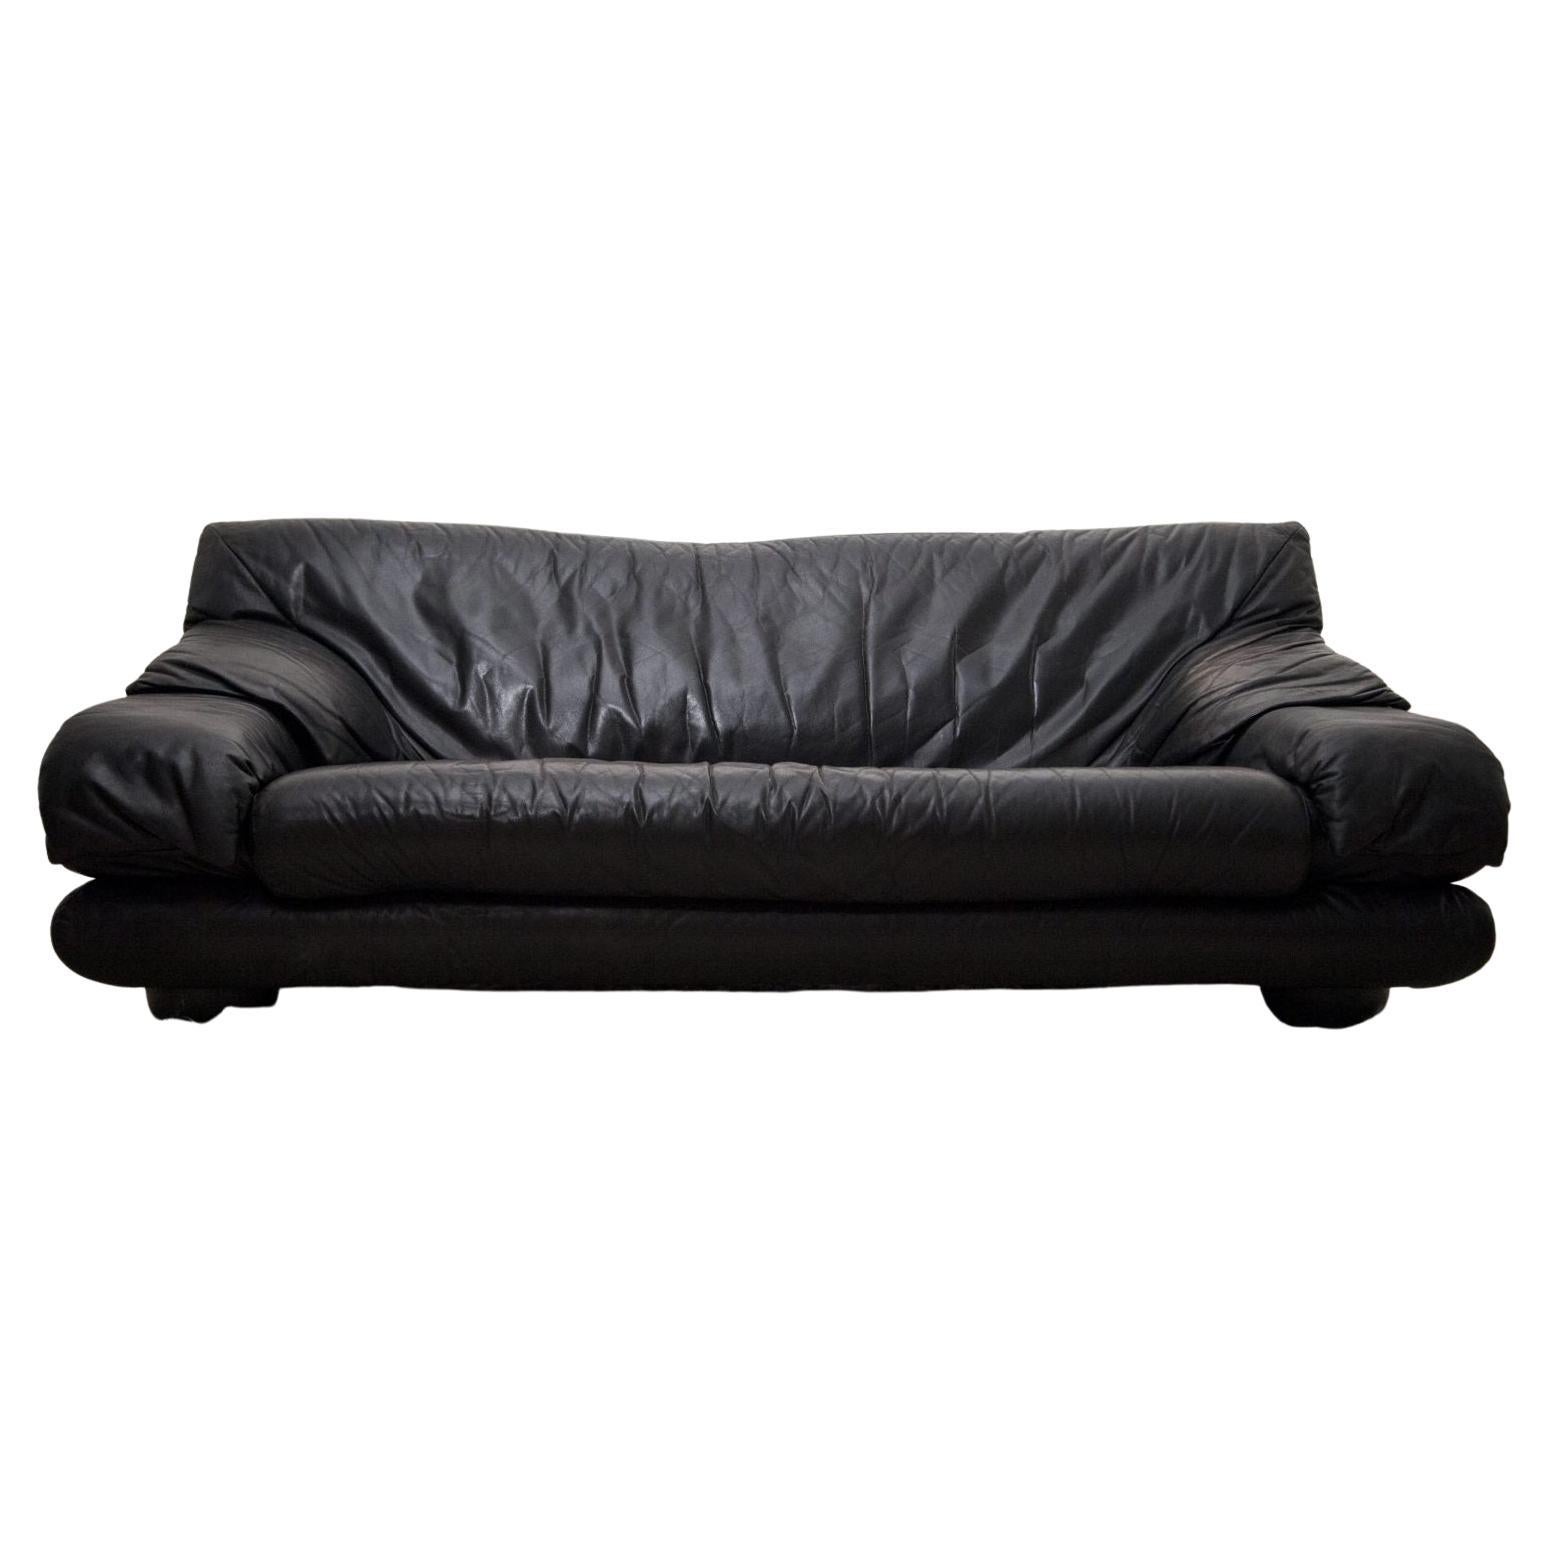 1970s Black Leather Sofa by Manufacturer Wiener Werkstätte